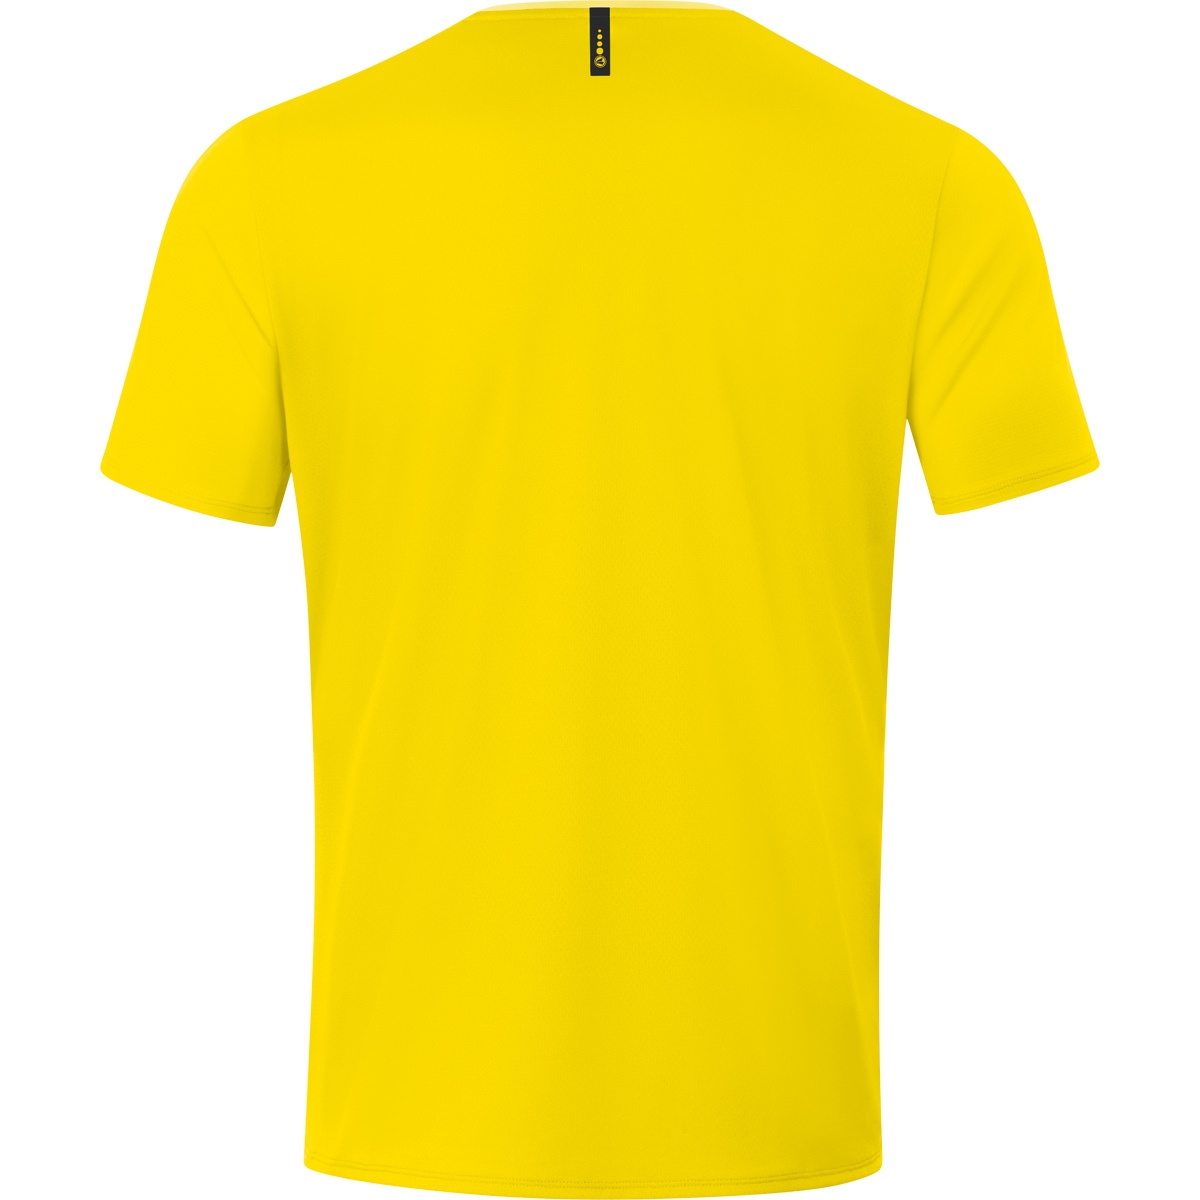 2.0 Herren, light, 3XL, JAKO Gr. 6120 Champ citro/citro T-Shirt